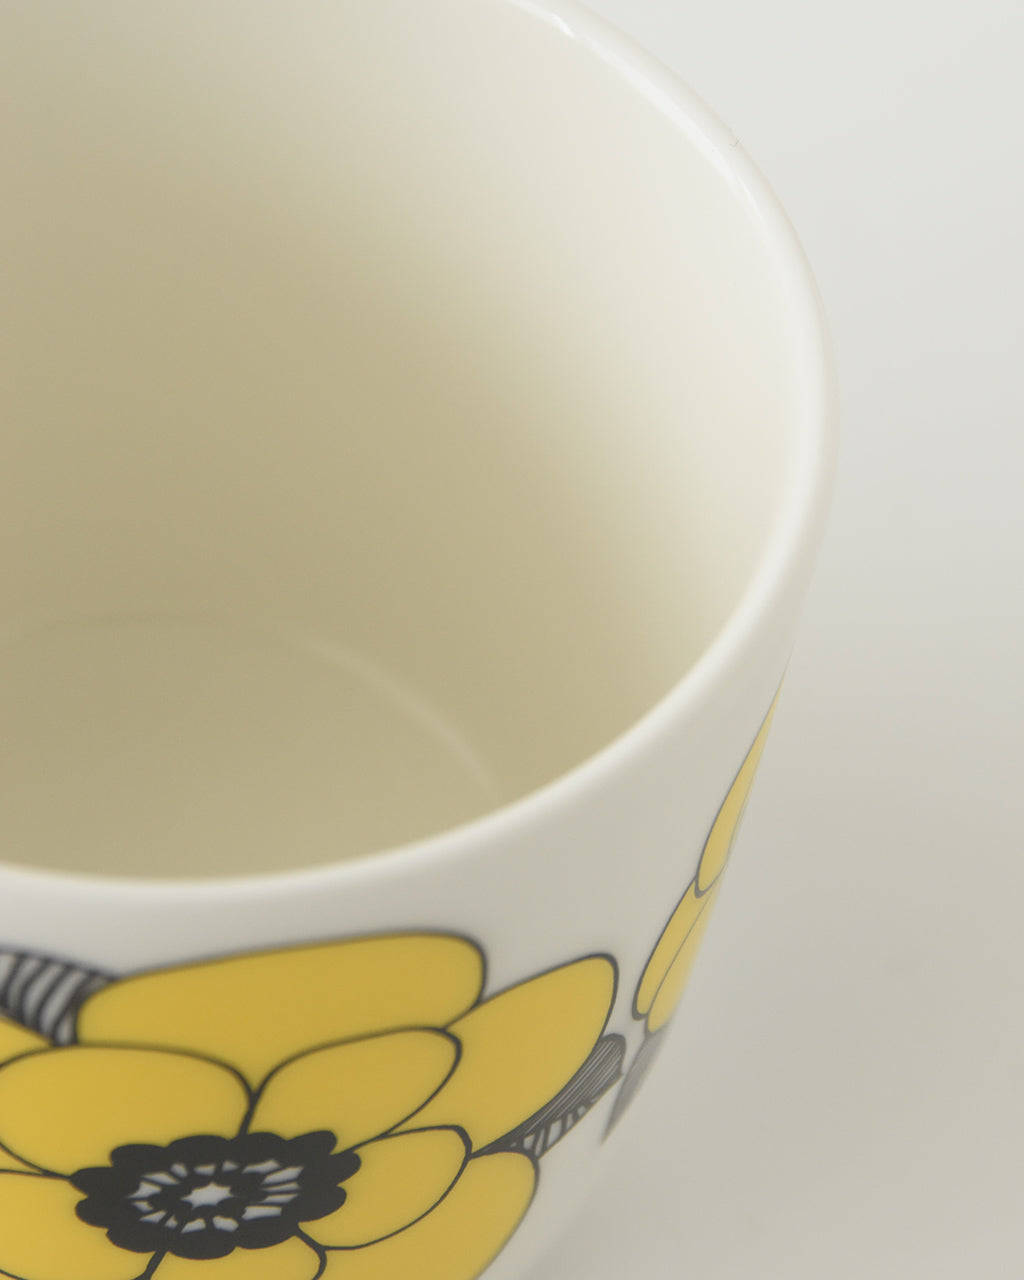 marimekko マリメッコ ケスティット カップ Kestit COFFEE CUP 2PCS  コーヒーカップ 花柄 200ml ペア 2個セット 52249470018